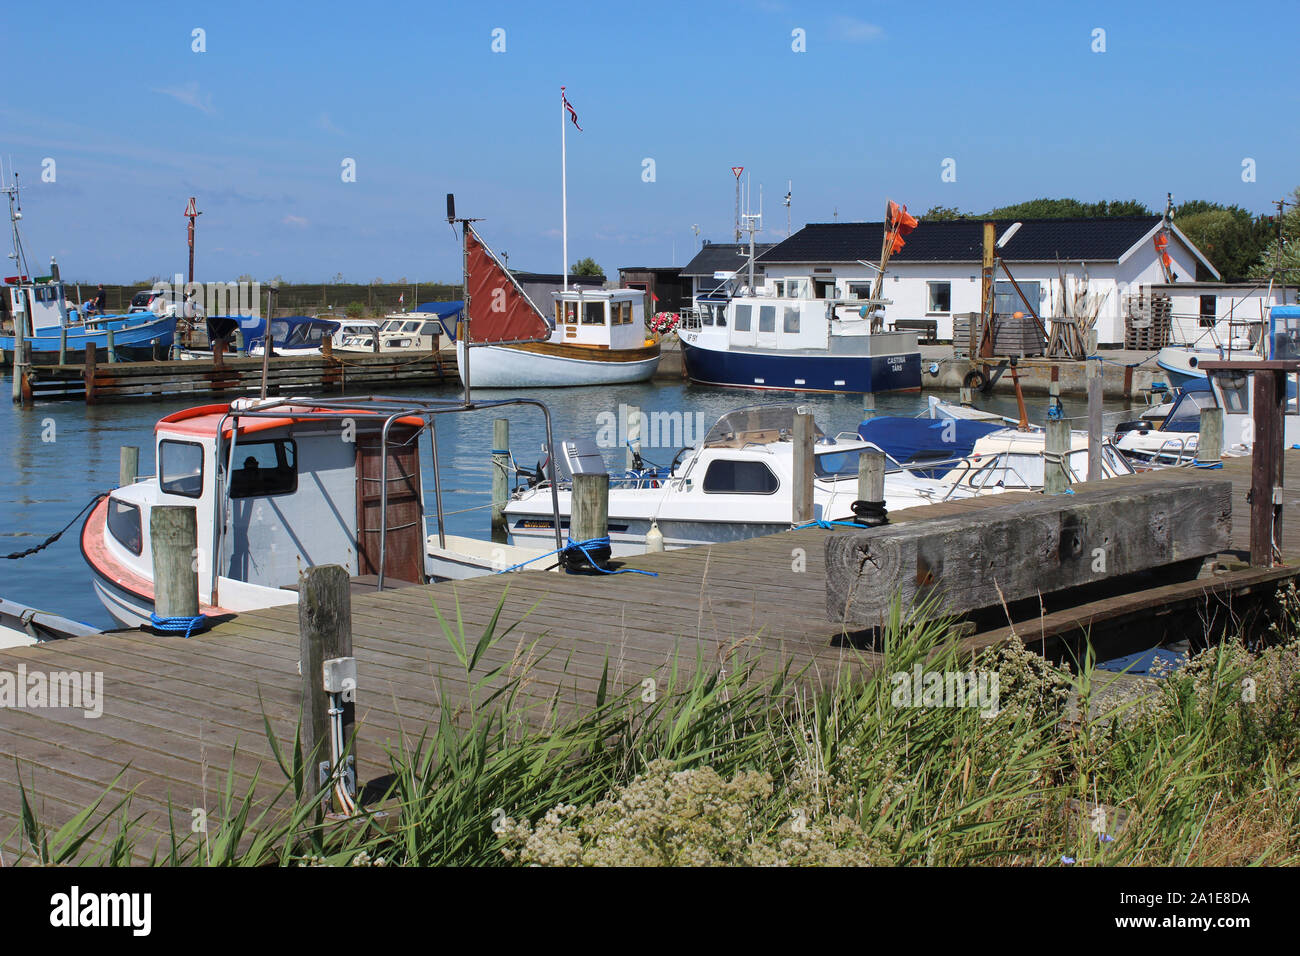 TARS, Dänemark, 18. Juli 2019: Die kleine und pittoreske Tars angeln Yachthafen und den Hafen auf der Insel Lolland in Dänemark. Eine hübsche Reisen destinatio Stockfoto